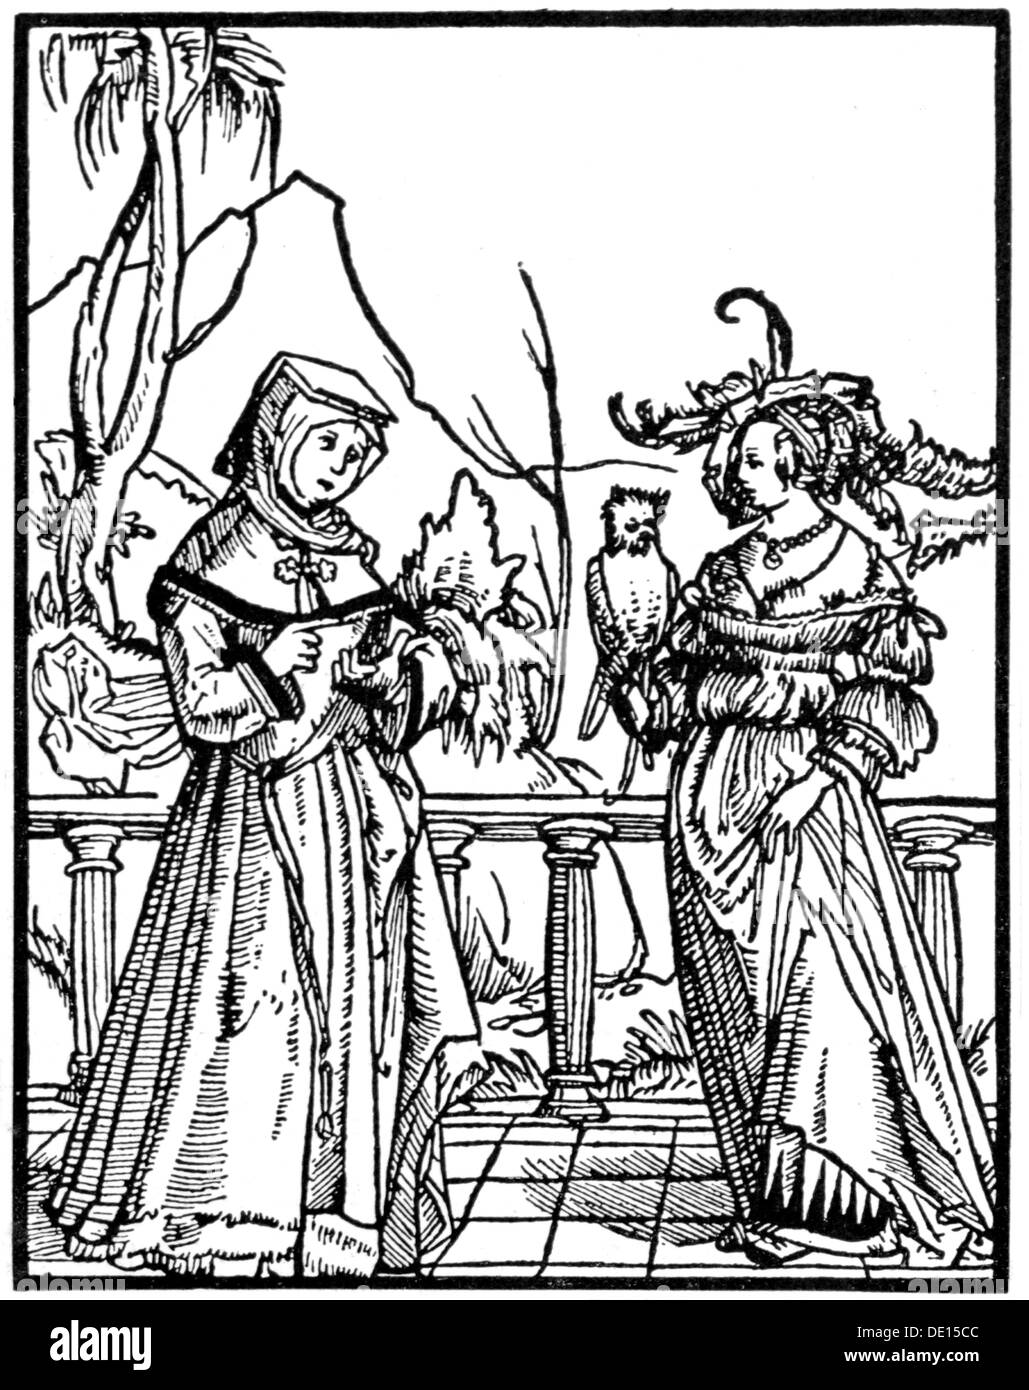 Mode, 16ème siècle, 'Klag wyplicher scam' (le filament sur le sens de la honte femelle), coupe de bois, 16ème siècle, droits additionnels-Clearences-non disponible Banque D'Images